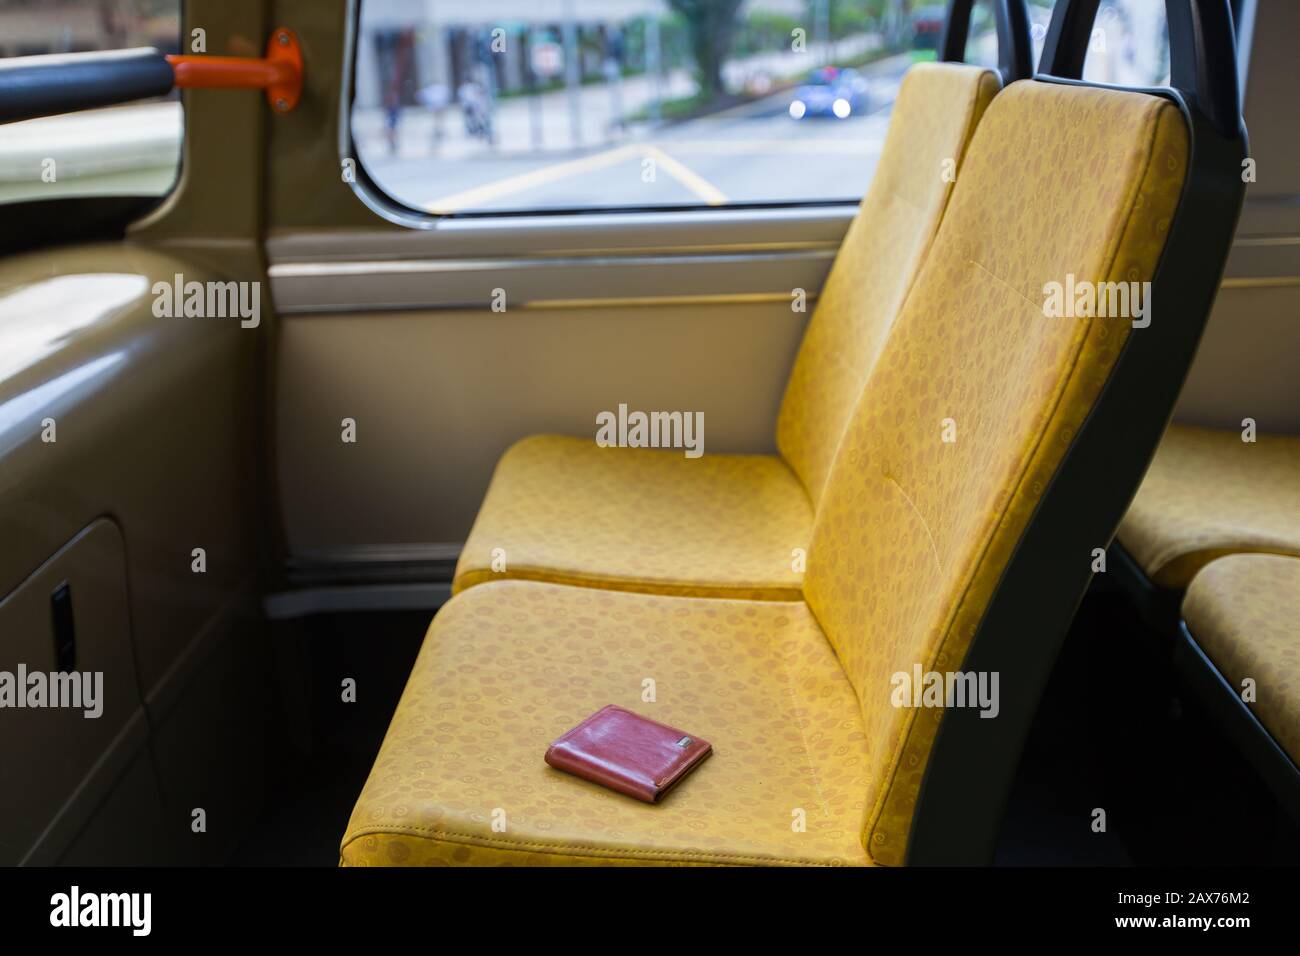 Eine braune Brieftasche auf dem Sitz eines Busses gefunden Stockfoto